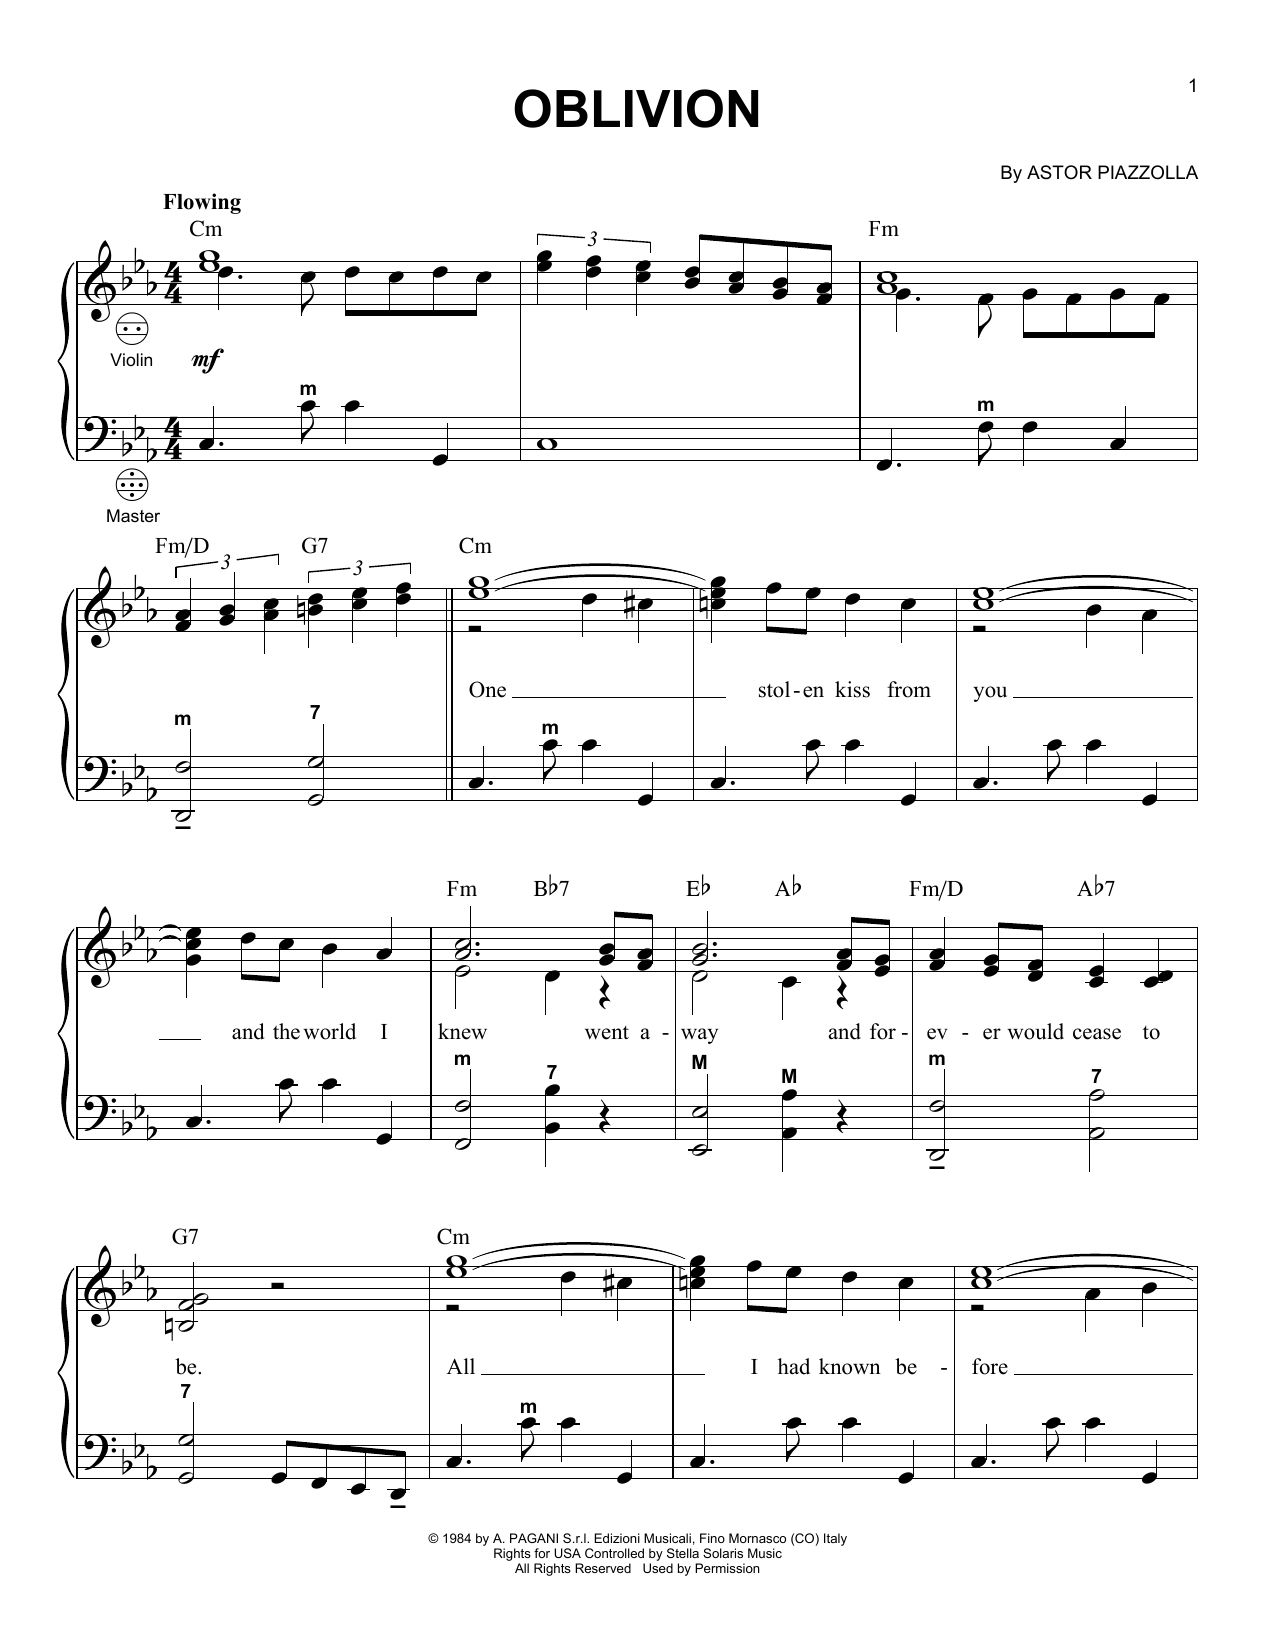 fraktion shuttle Paranafloden Gary Meisner "Oblivion" Sheet Music PDF Notes, Chords | Pop Score Accordion  Download Printable. SKU: 157980